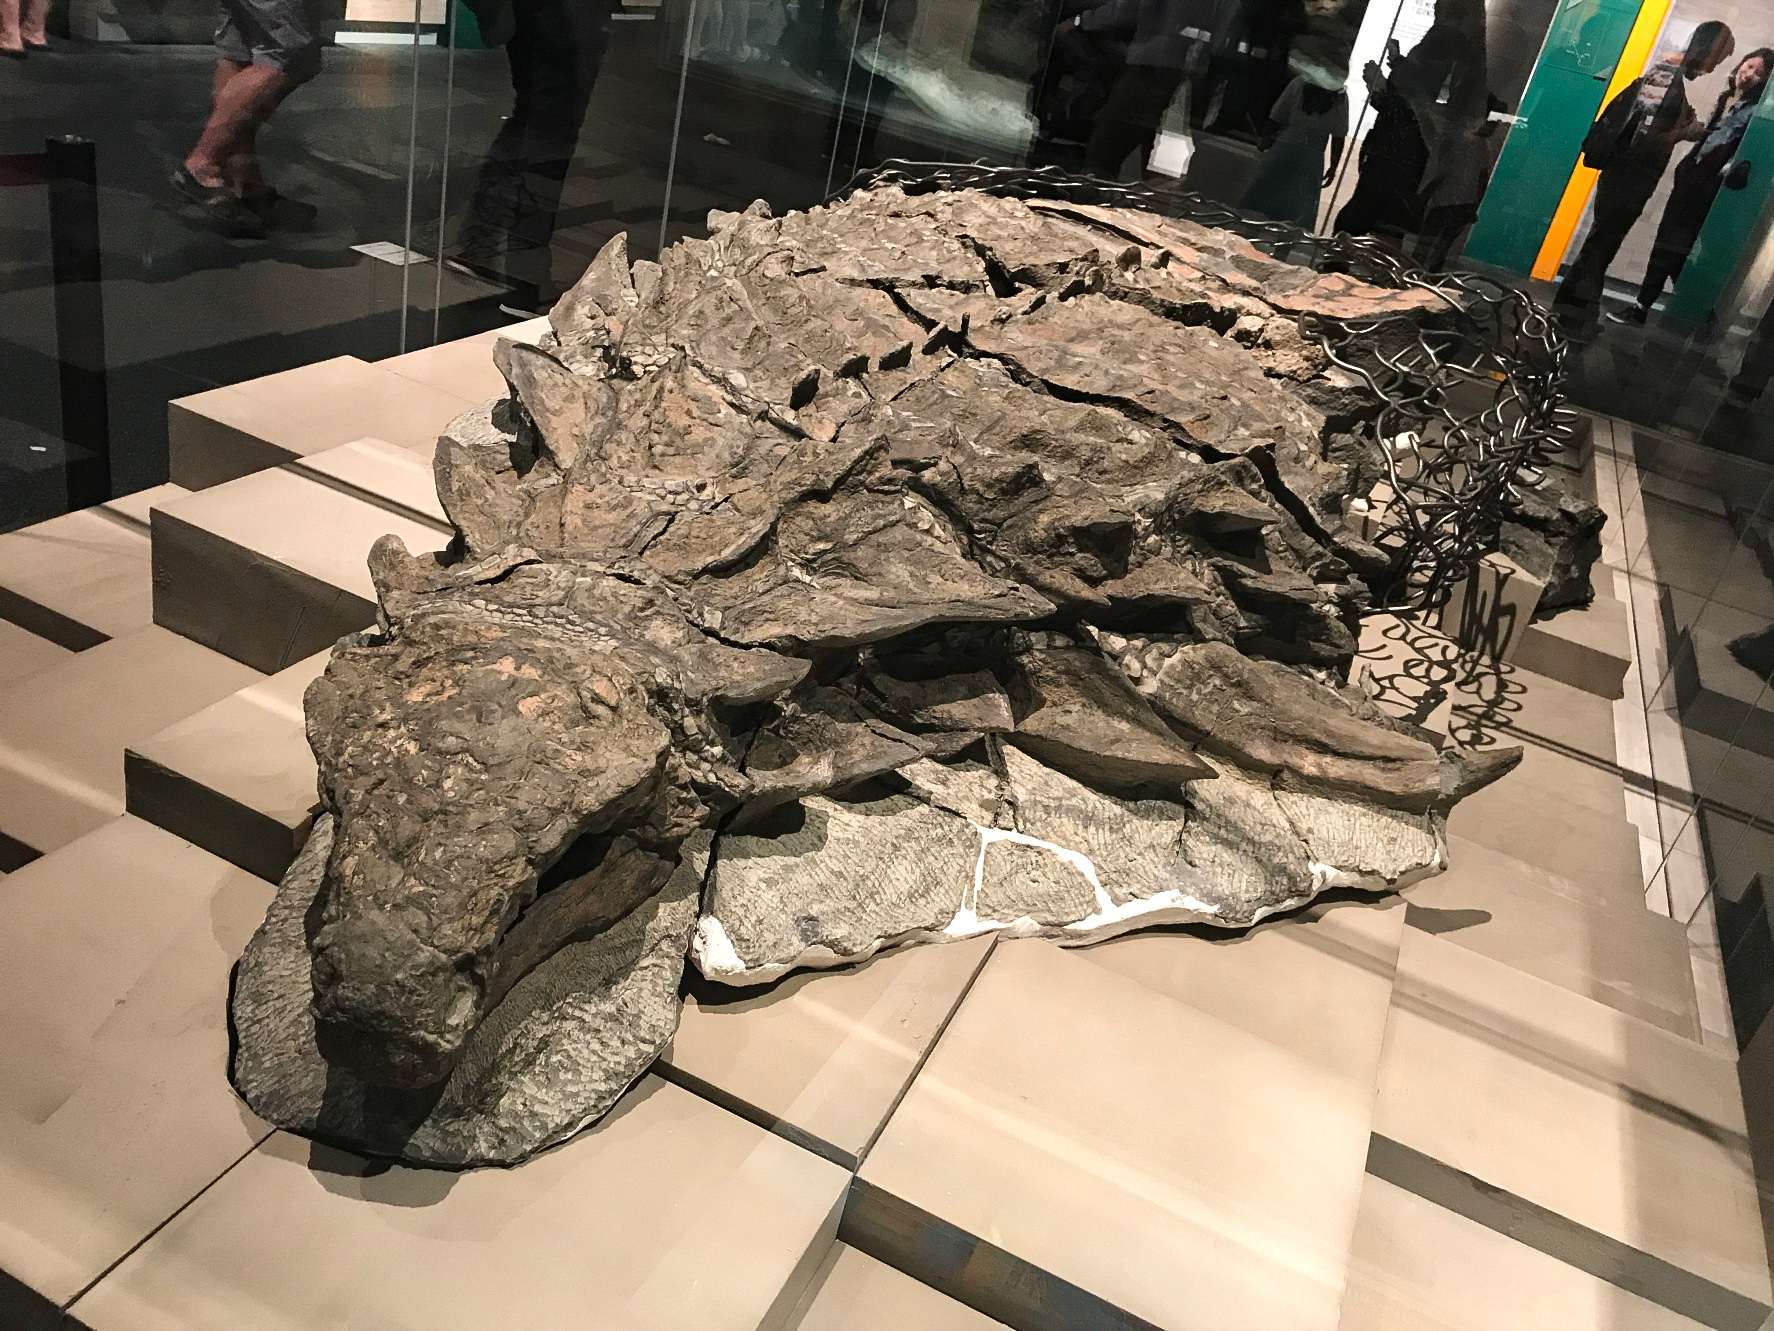 Borealopelta (có nghĩa là "lá chắn phương Bắc") là một chi của loài ankylosaur nút từ kỷ Phấn trắng sớm ở Alberta, Canada. Nó chứa một loài duy nhất, B. markmitchelli, được đặt tên vào năm 2017 bởi Caleb Brown và các đồng nghiệp từ một mẫu vật được bảo quản tốt được gọi là Suncor nút.